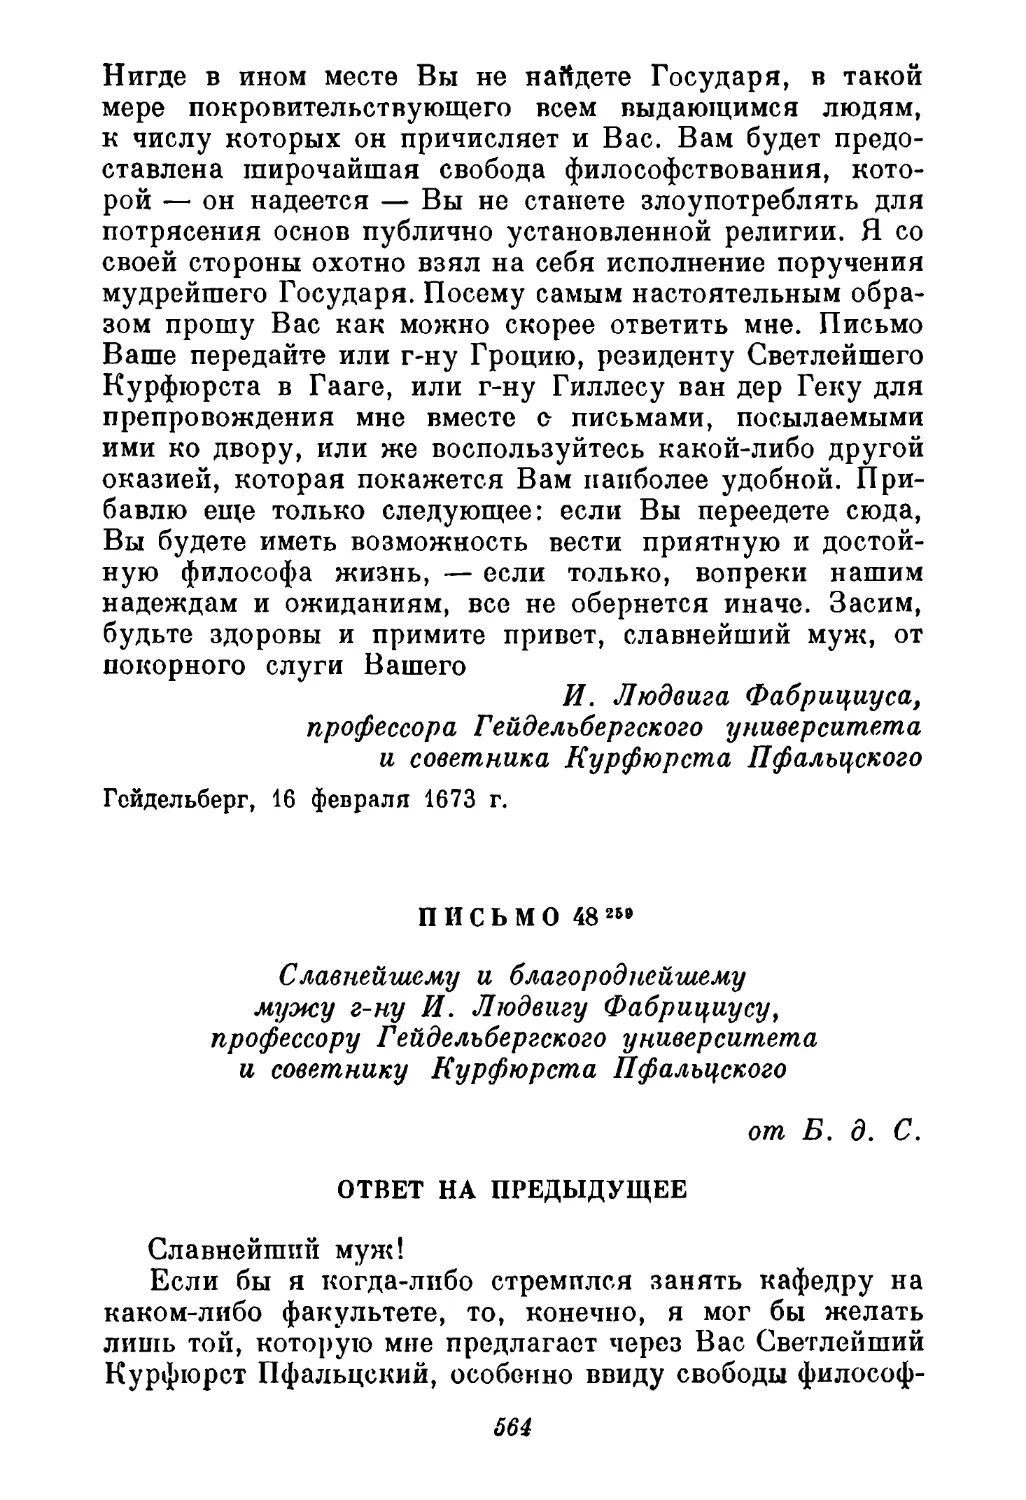 48. Спиноза Фабрициусу 30 марта 1673 г.